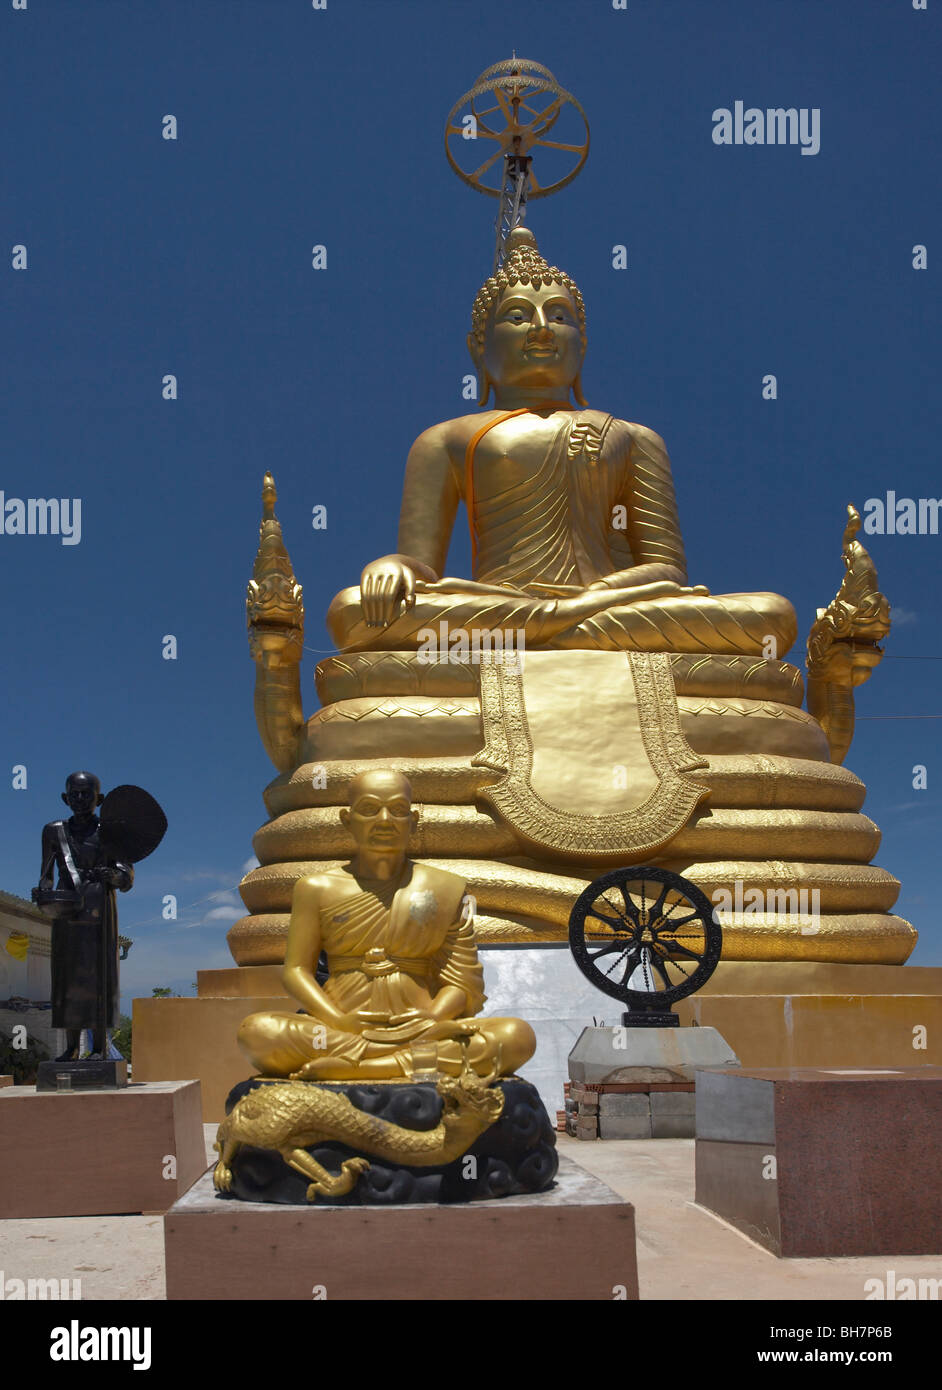 Budas de oro en el Templo del Gran Buda, Phuket, Tailandia Foto de stock